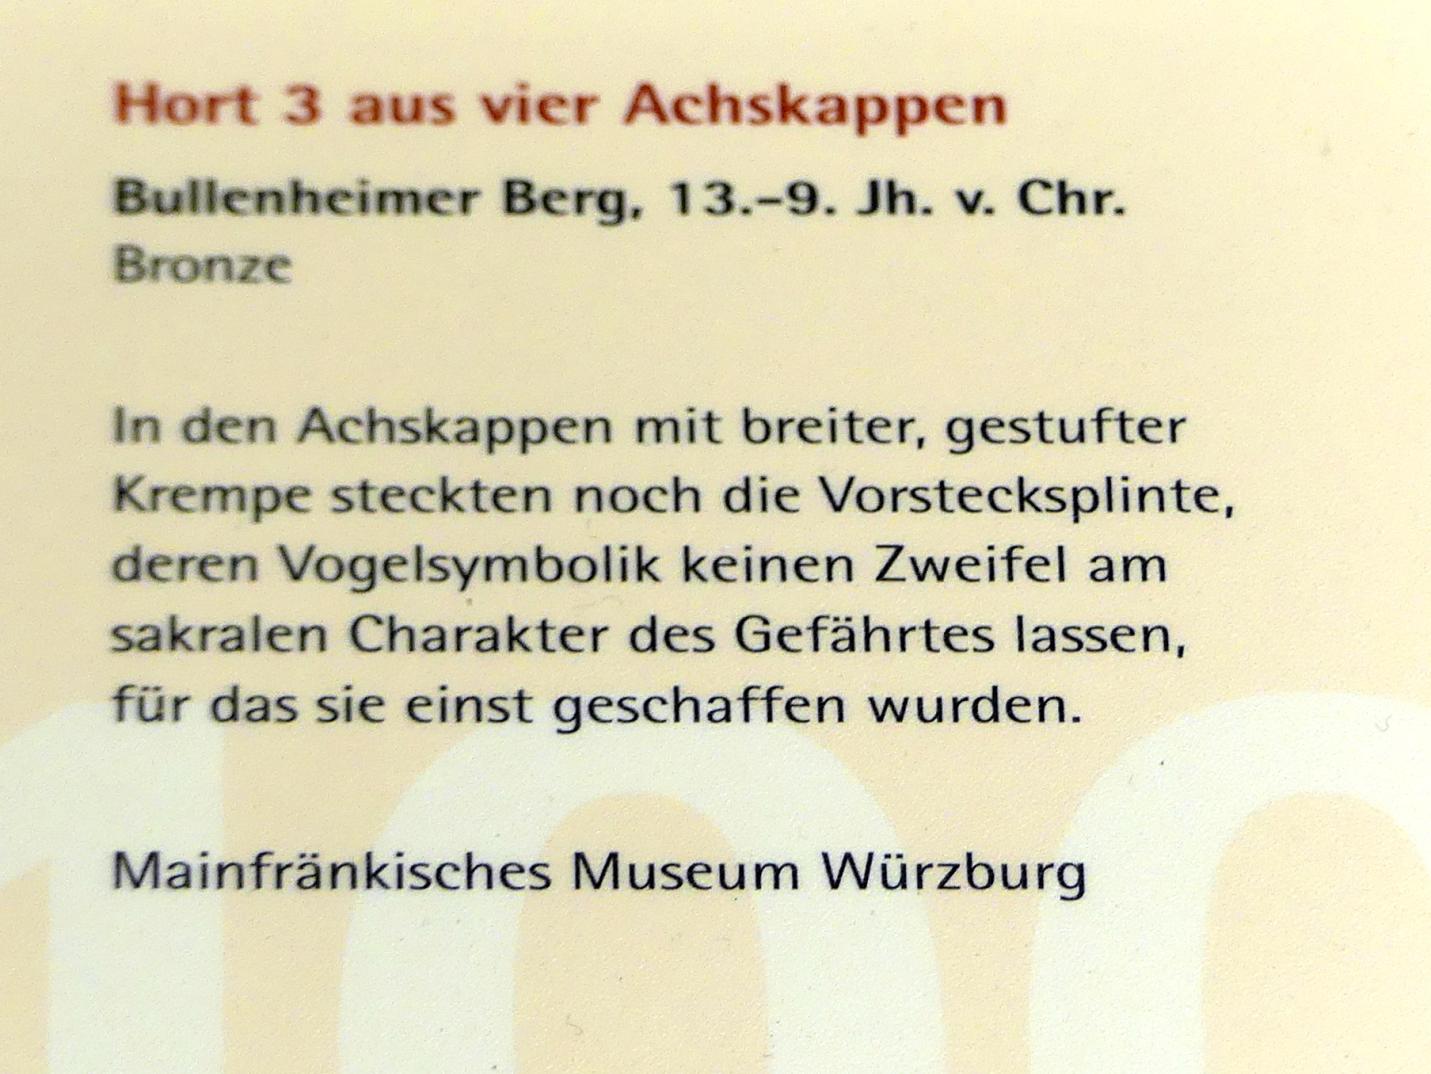 Hort aus vier Achskappen, Urnenfelderzeit, 1400 - 700 v. Chr., 1300 - 800 v. Chr., Bild 4/4